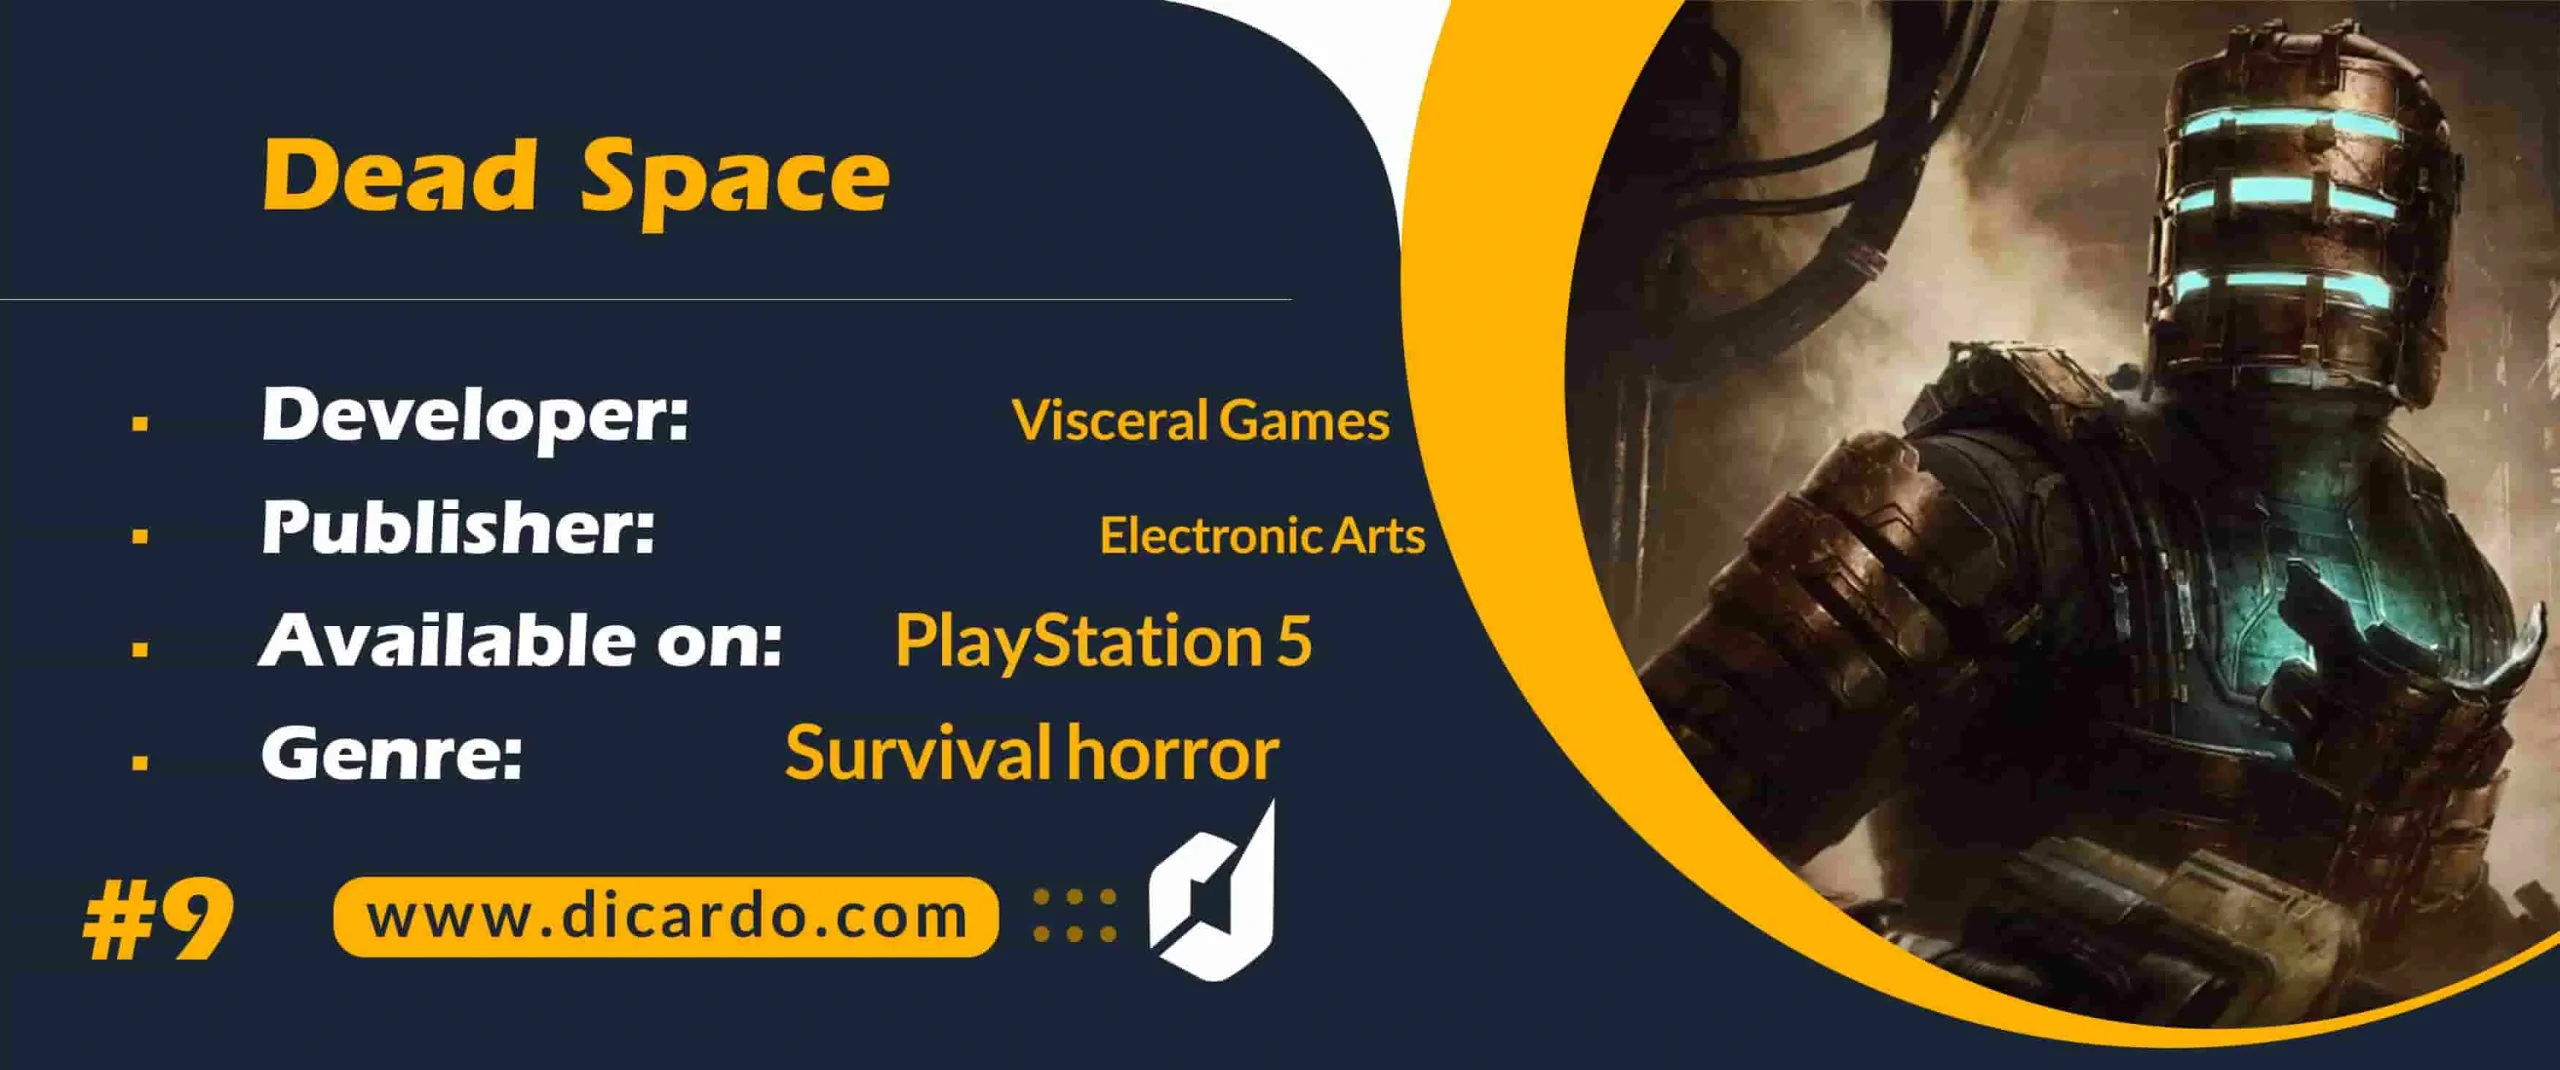 #9 دد اسپیس Dead Space از بهترین بازیهای PS5 به شکل مجموعه ای علمی تخیلی و ترسناک